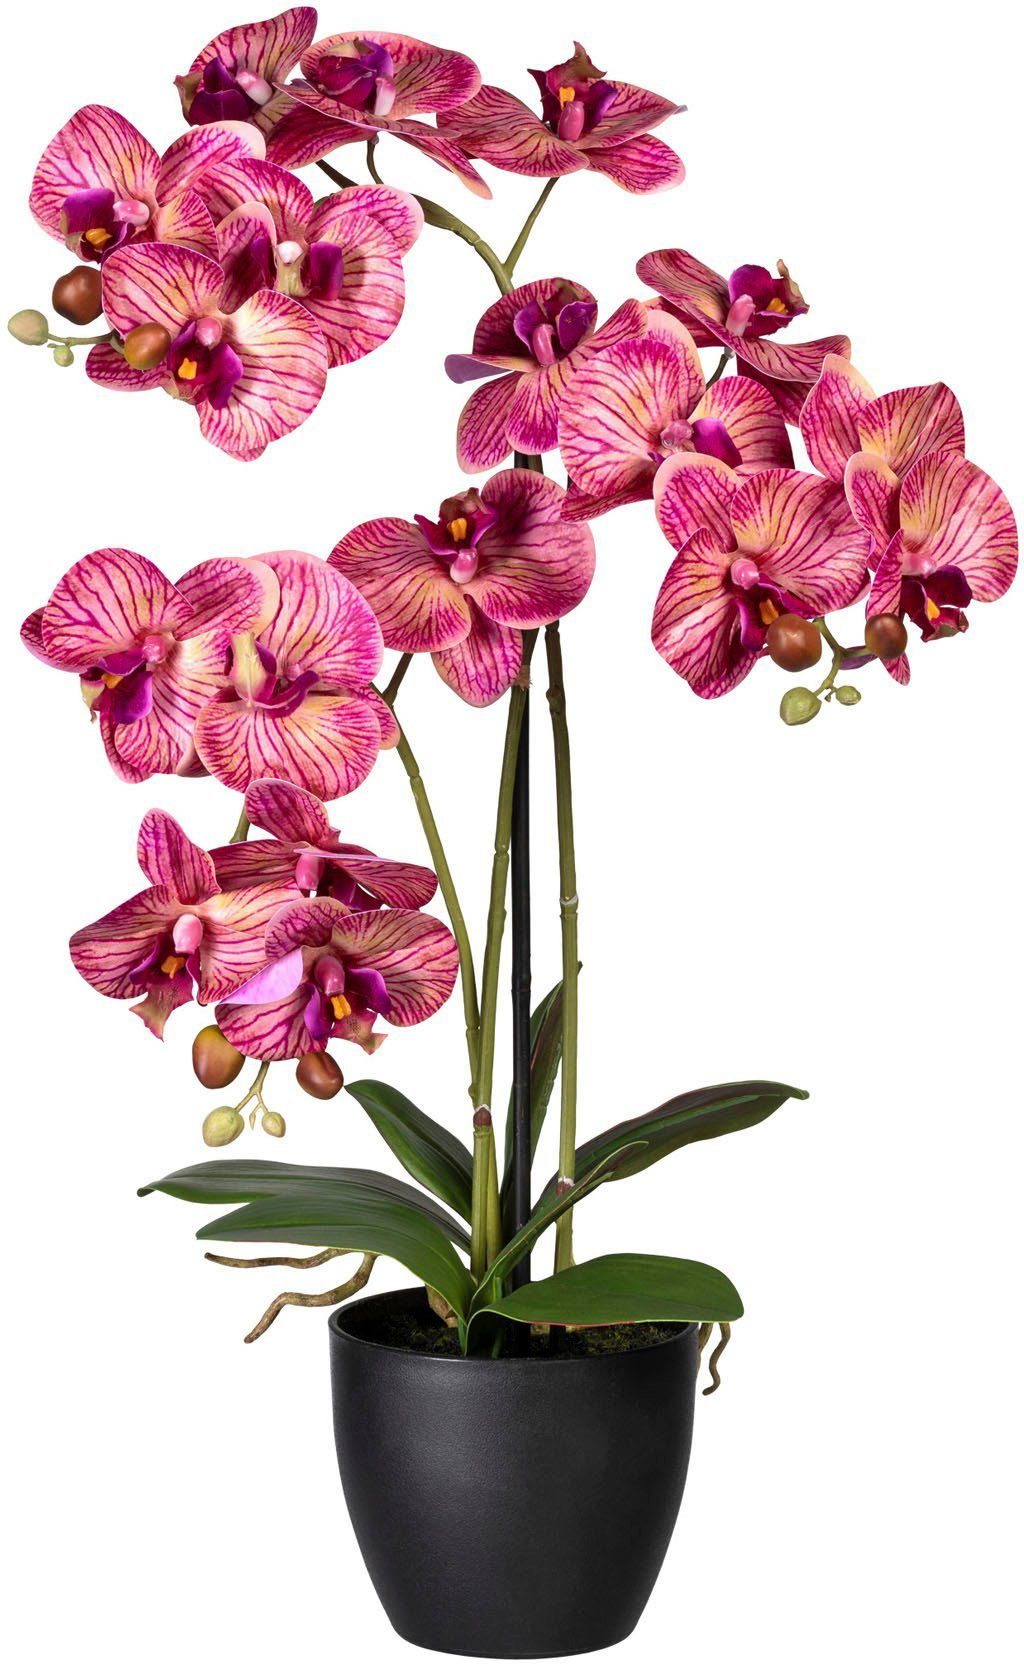 green, cm Höhe Phalaenopsis creme/lila Phalaenopsis, Orchidee 65 Creativ Kunstorchidee